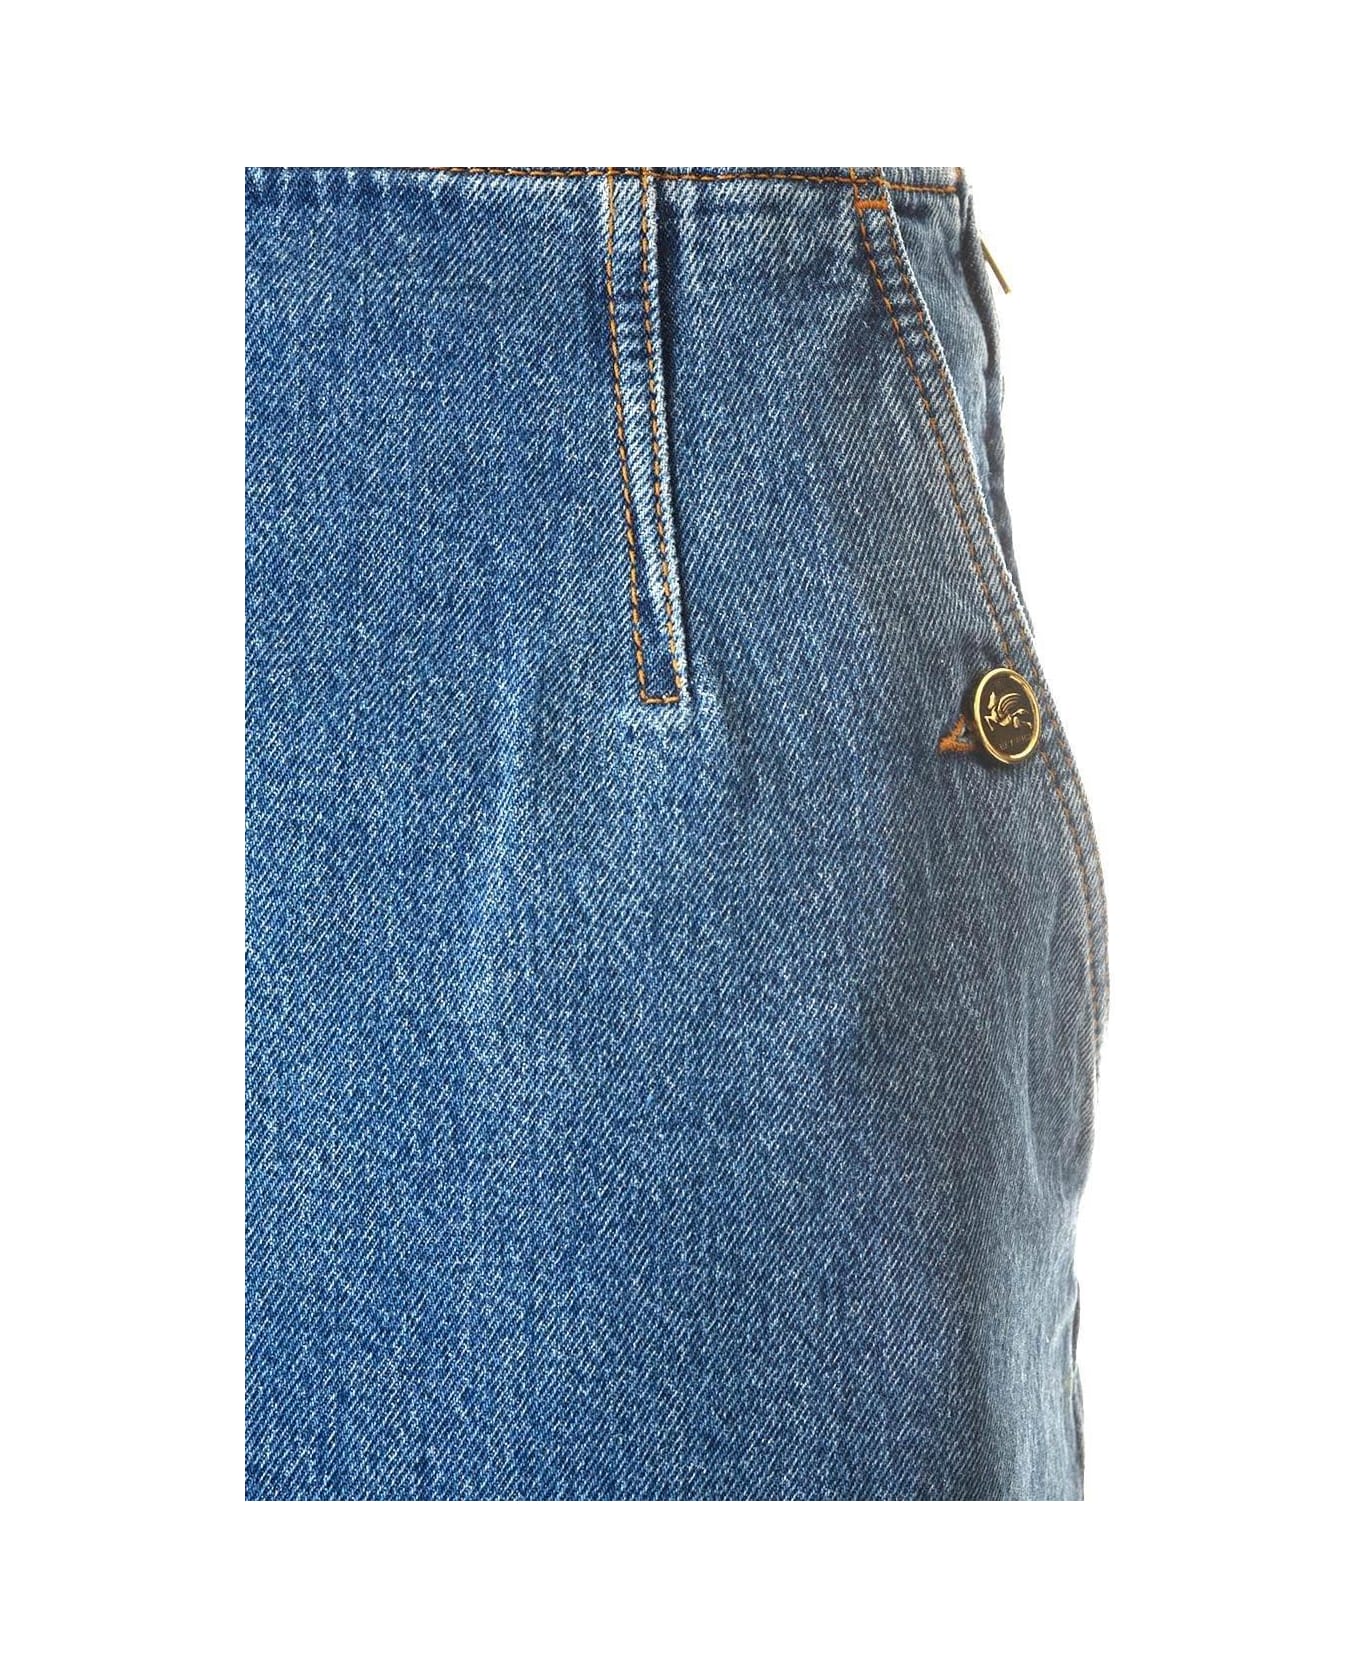 Etro Washed Denim Long Skirt - Azzurro スカート